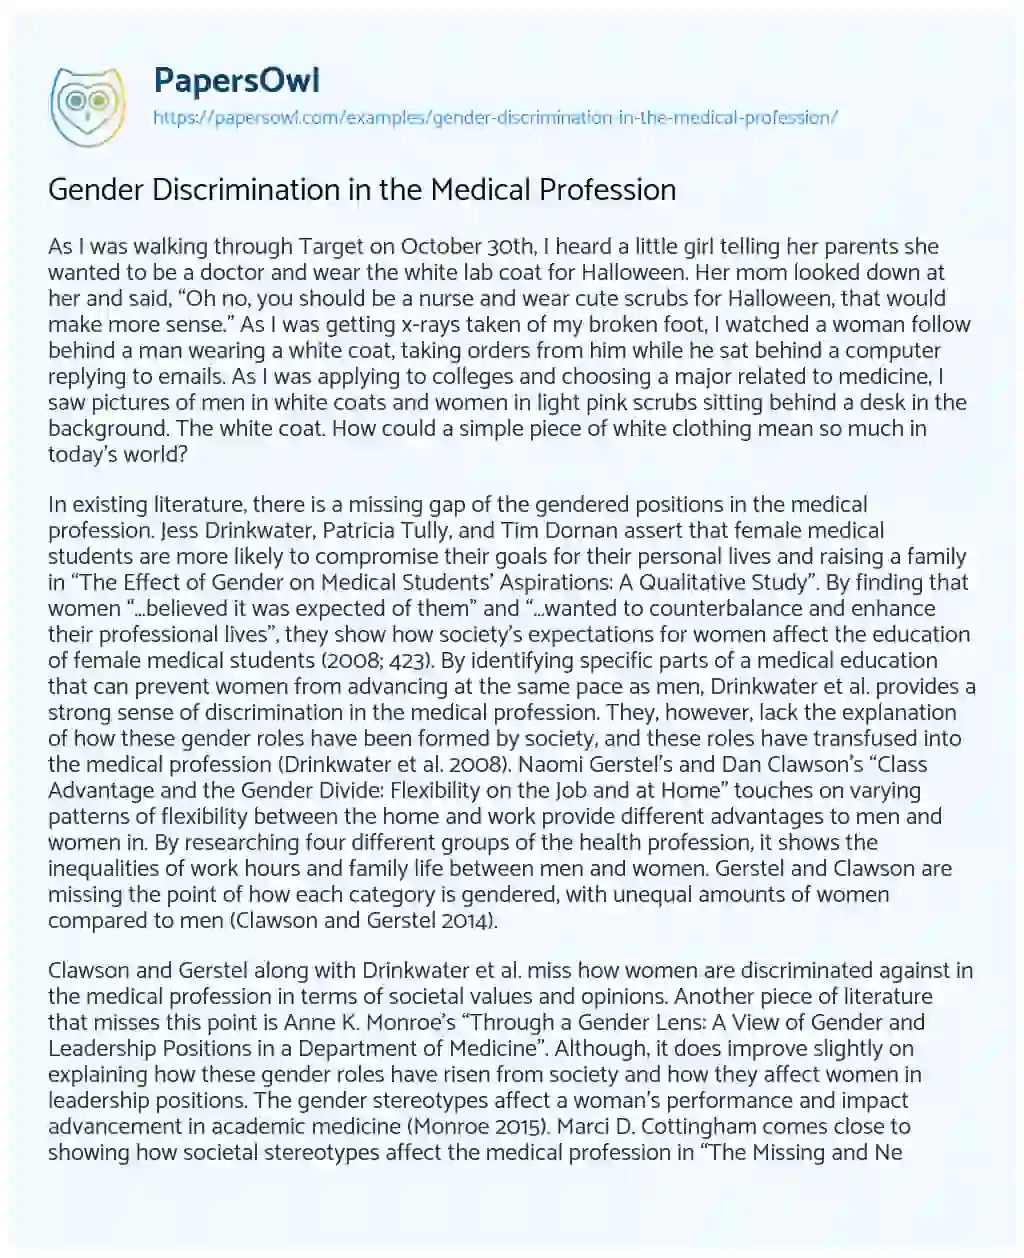 Essay on Gender Discrimination in the Medical Profession